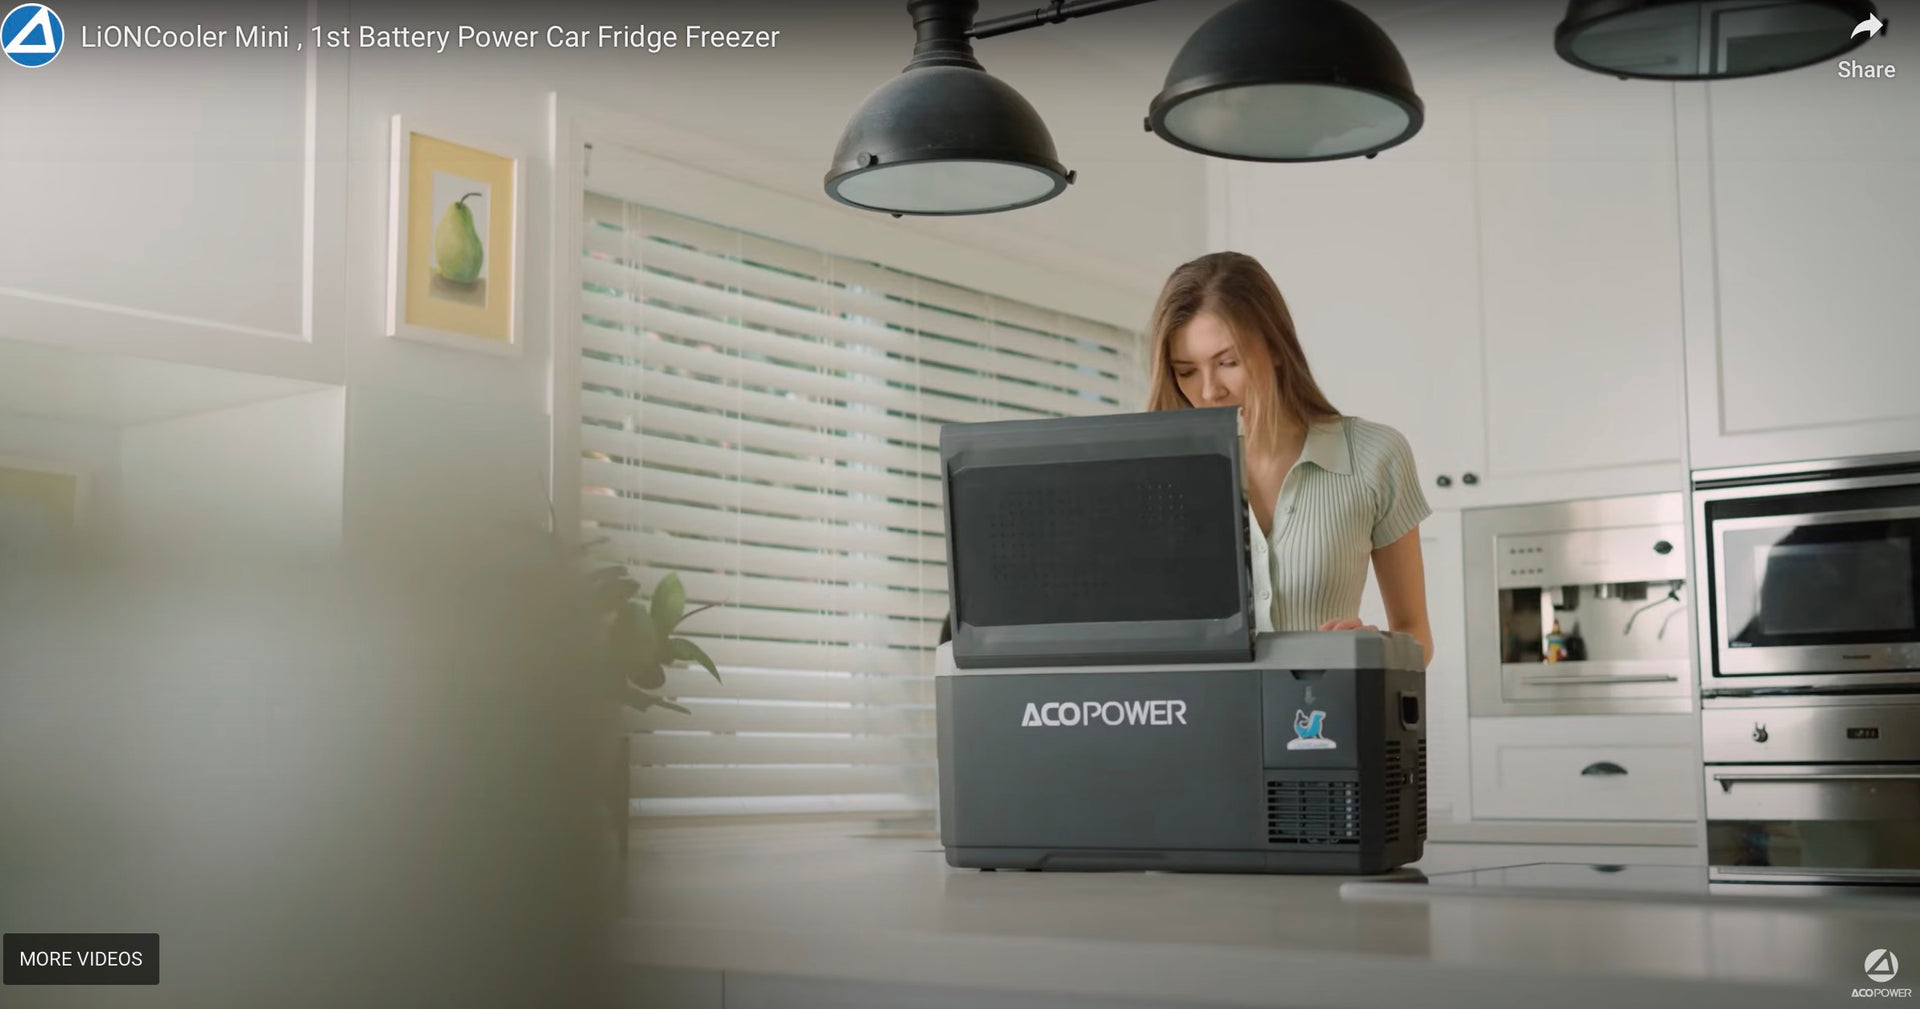 Load video: LiONCooler Mini , 1st Battery Power Car Fridge Freezer